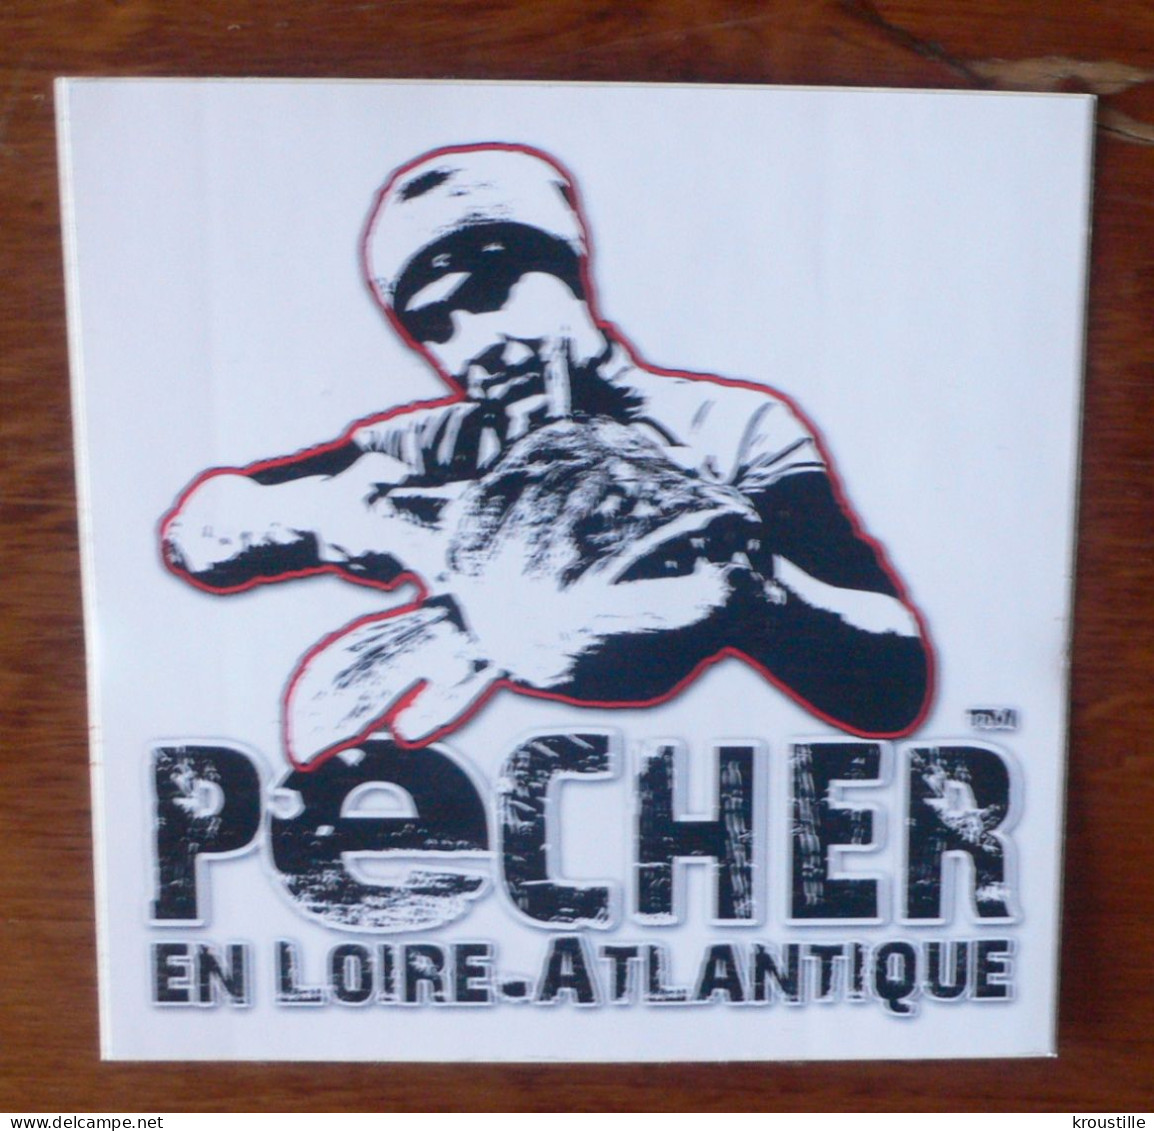 AUTCOLLANT PECHER EN LOIRE-ATLANTIQUE - Stickers